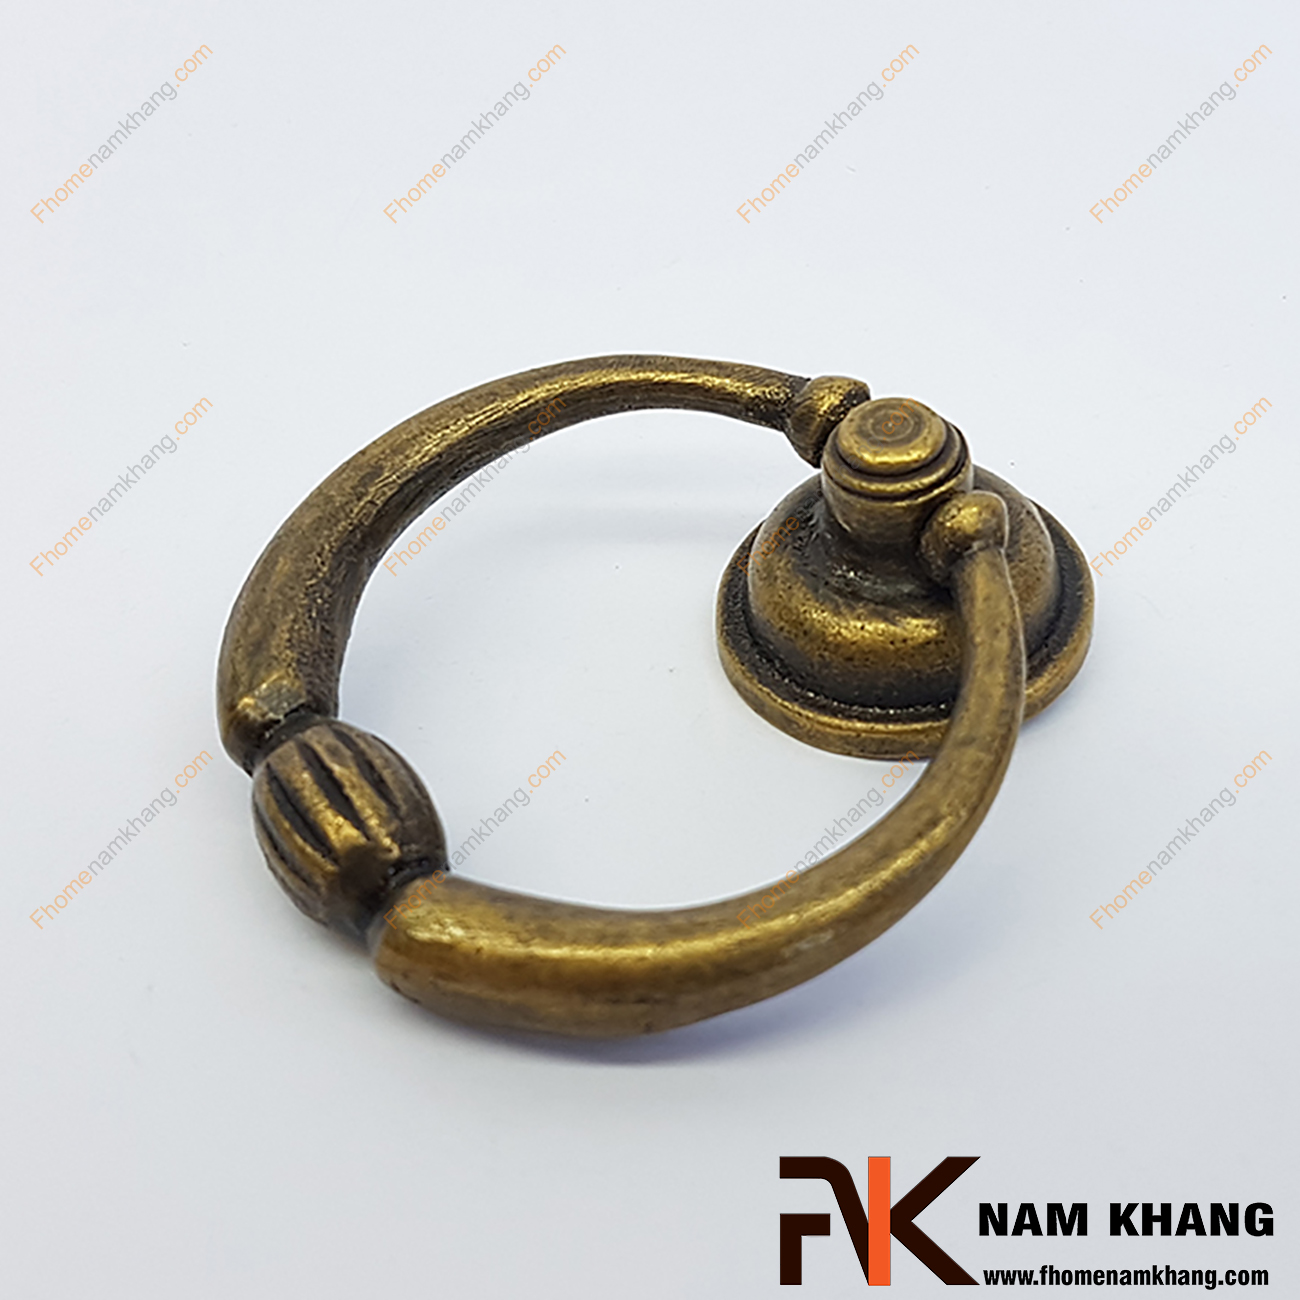 Núm kéo cửa tủ vòng đồng NKD069-C có khuôn dạng vòng nắm theo kiểu cổ. Đây là dạng tay nắm tủ quen thuộc và được sử dụng nhiều trong nội thất trải trong nhiều thời kỳ qua.